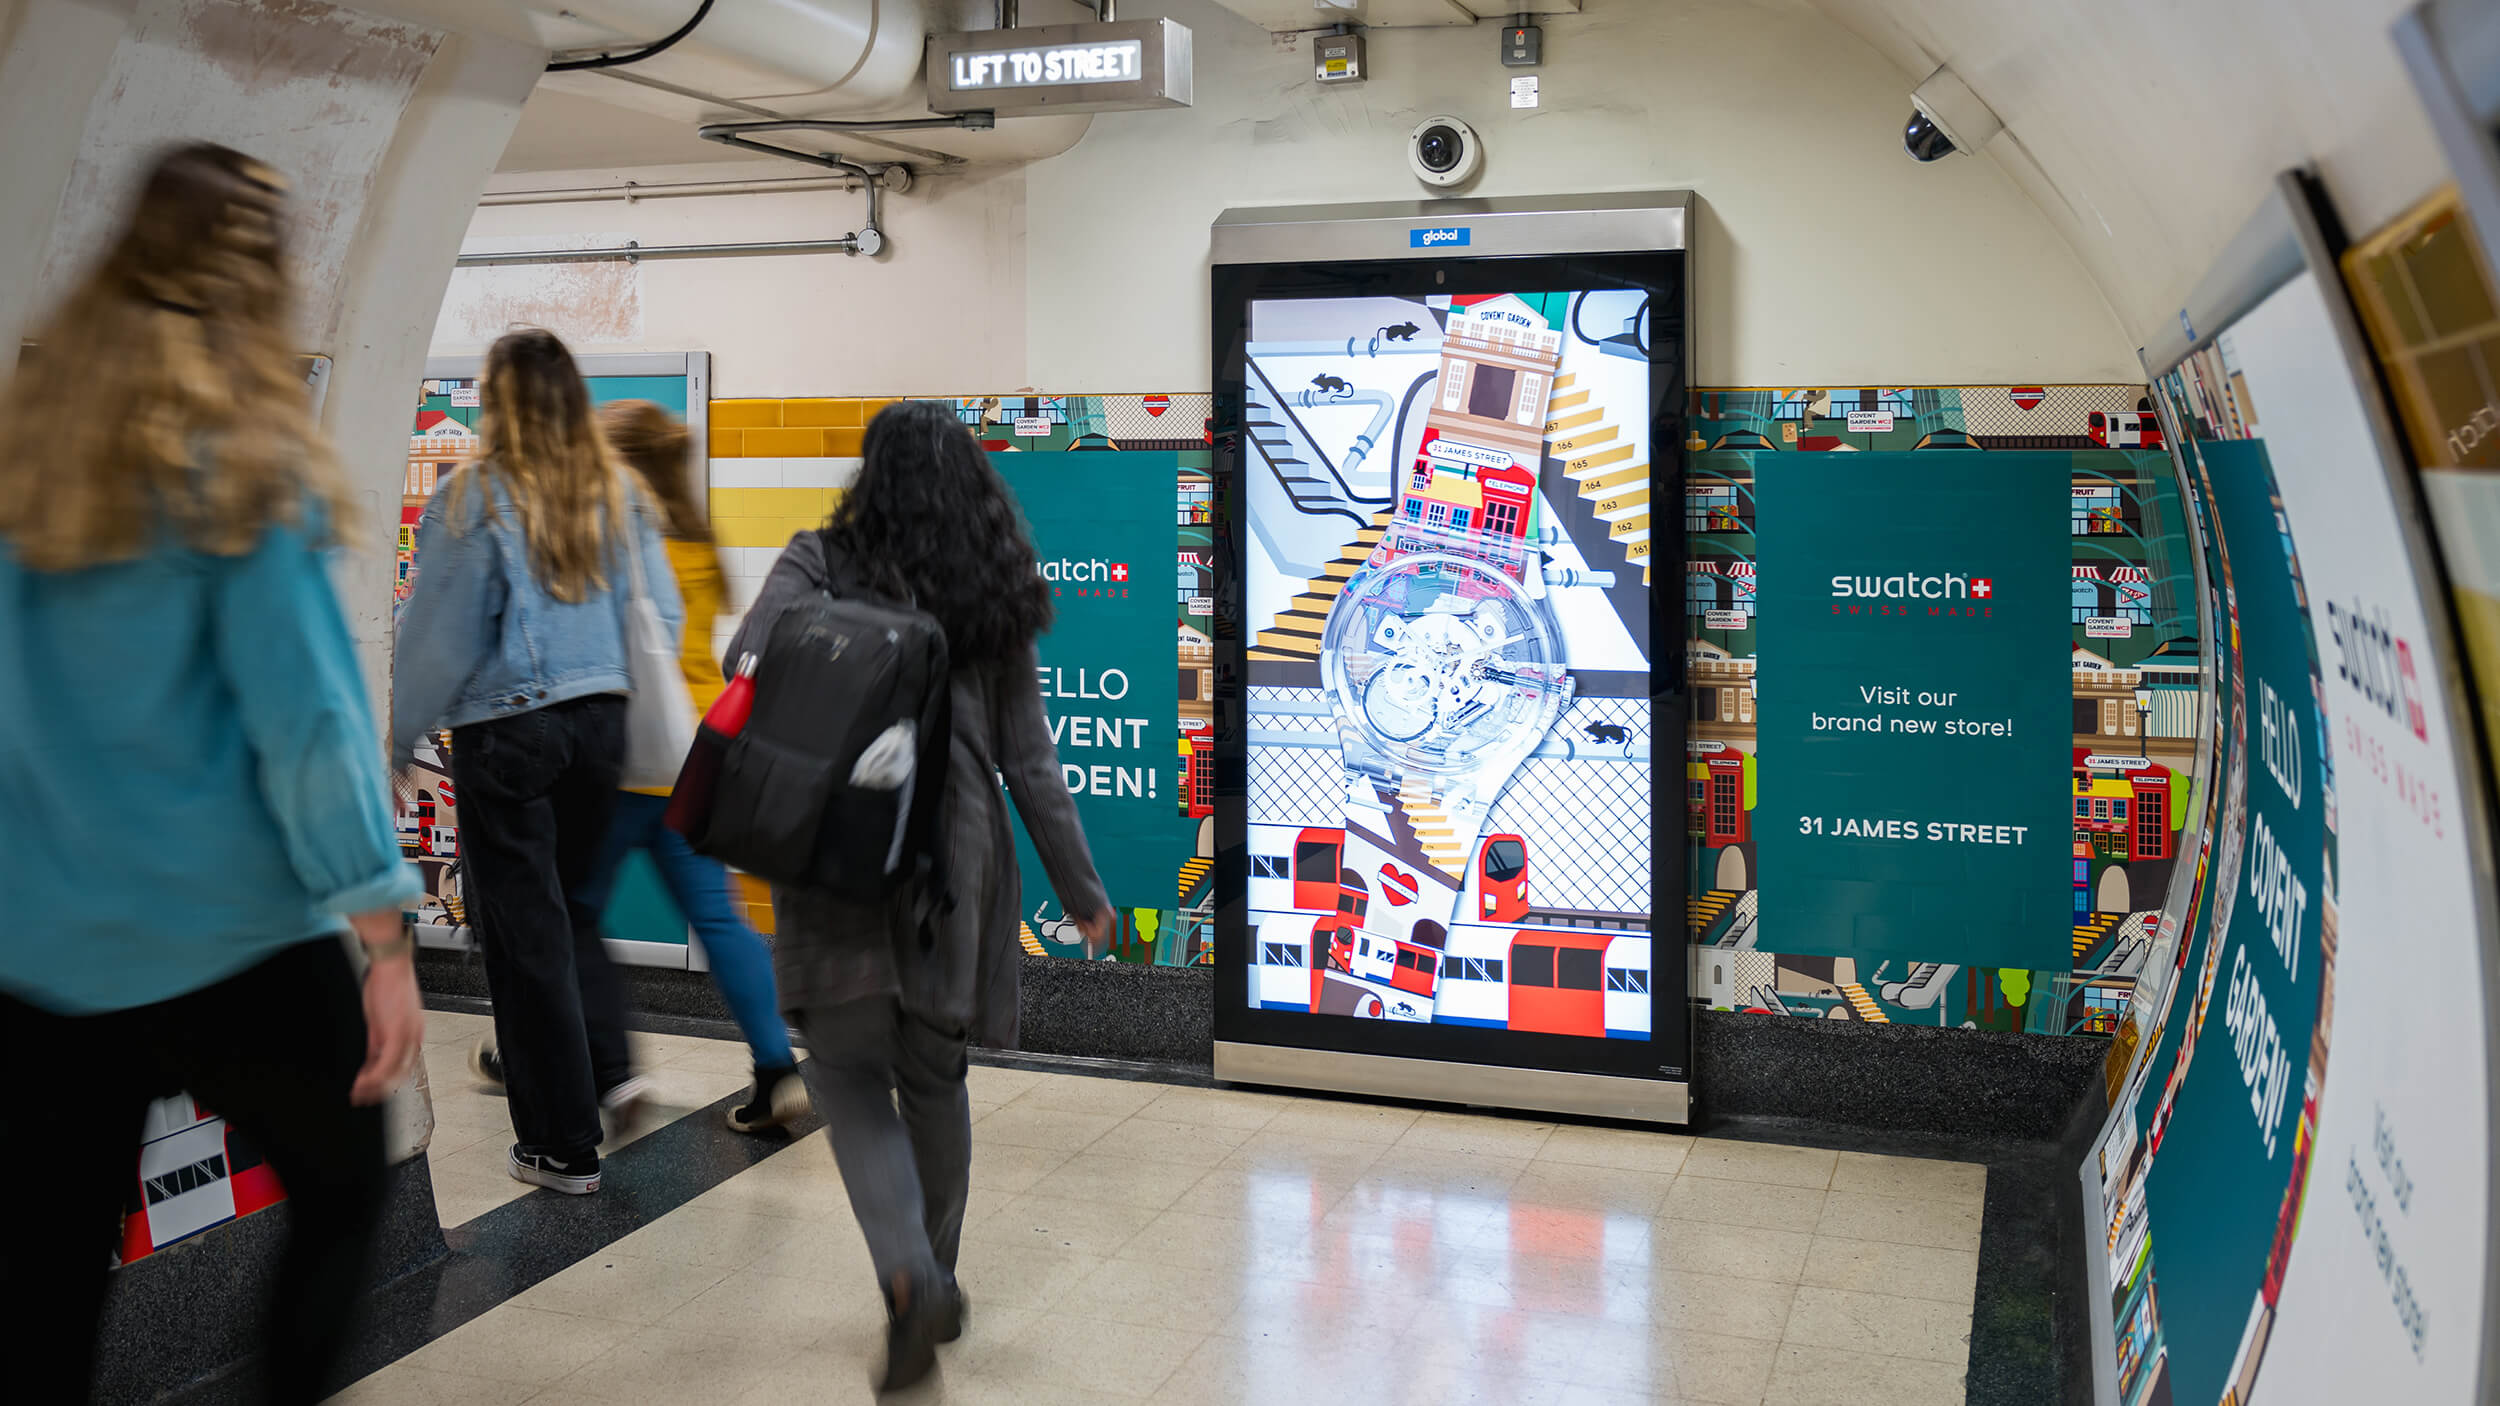 Swatch digital screen artwork in Covent Garden London Underground station